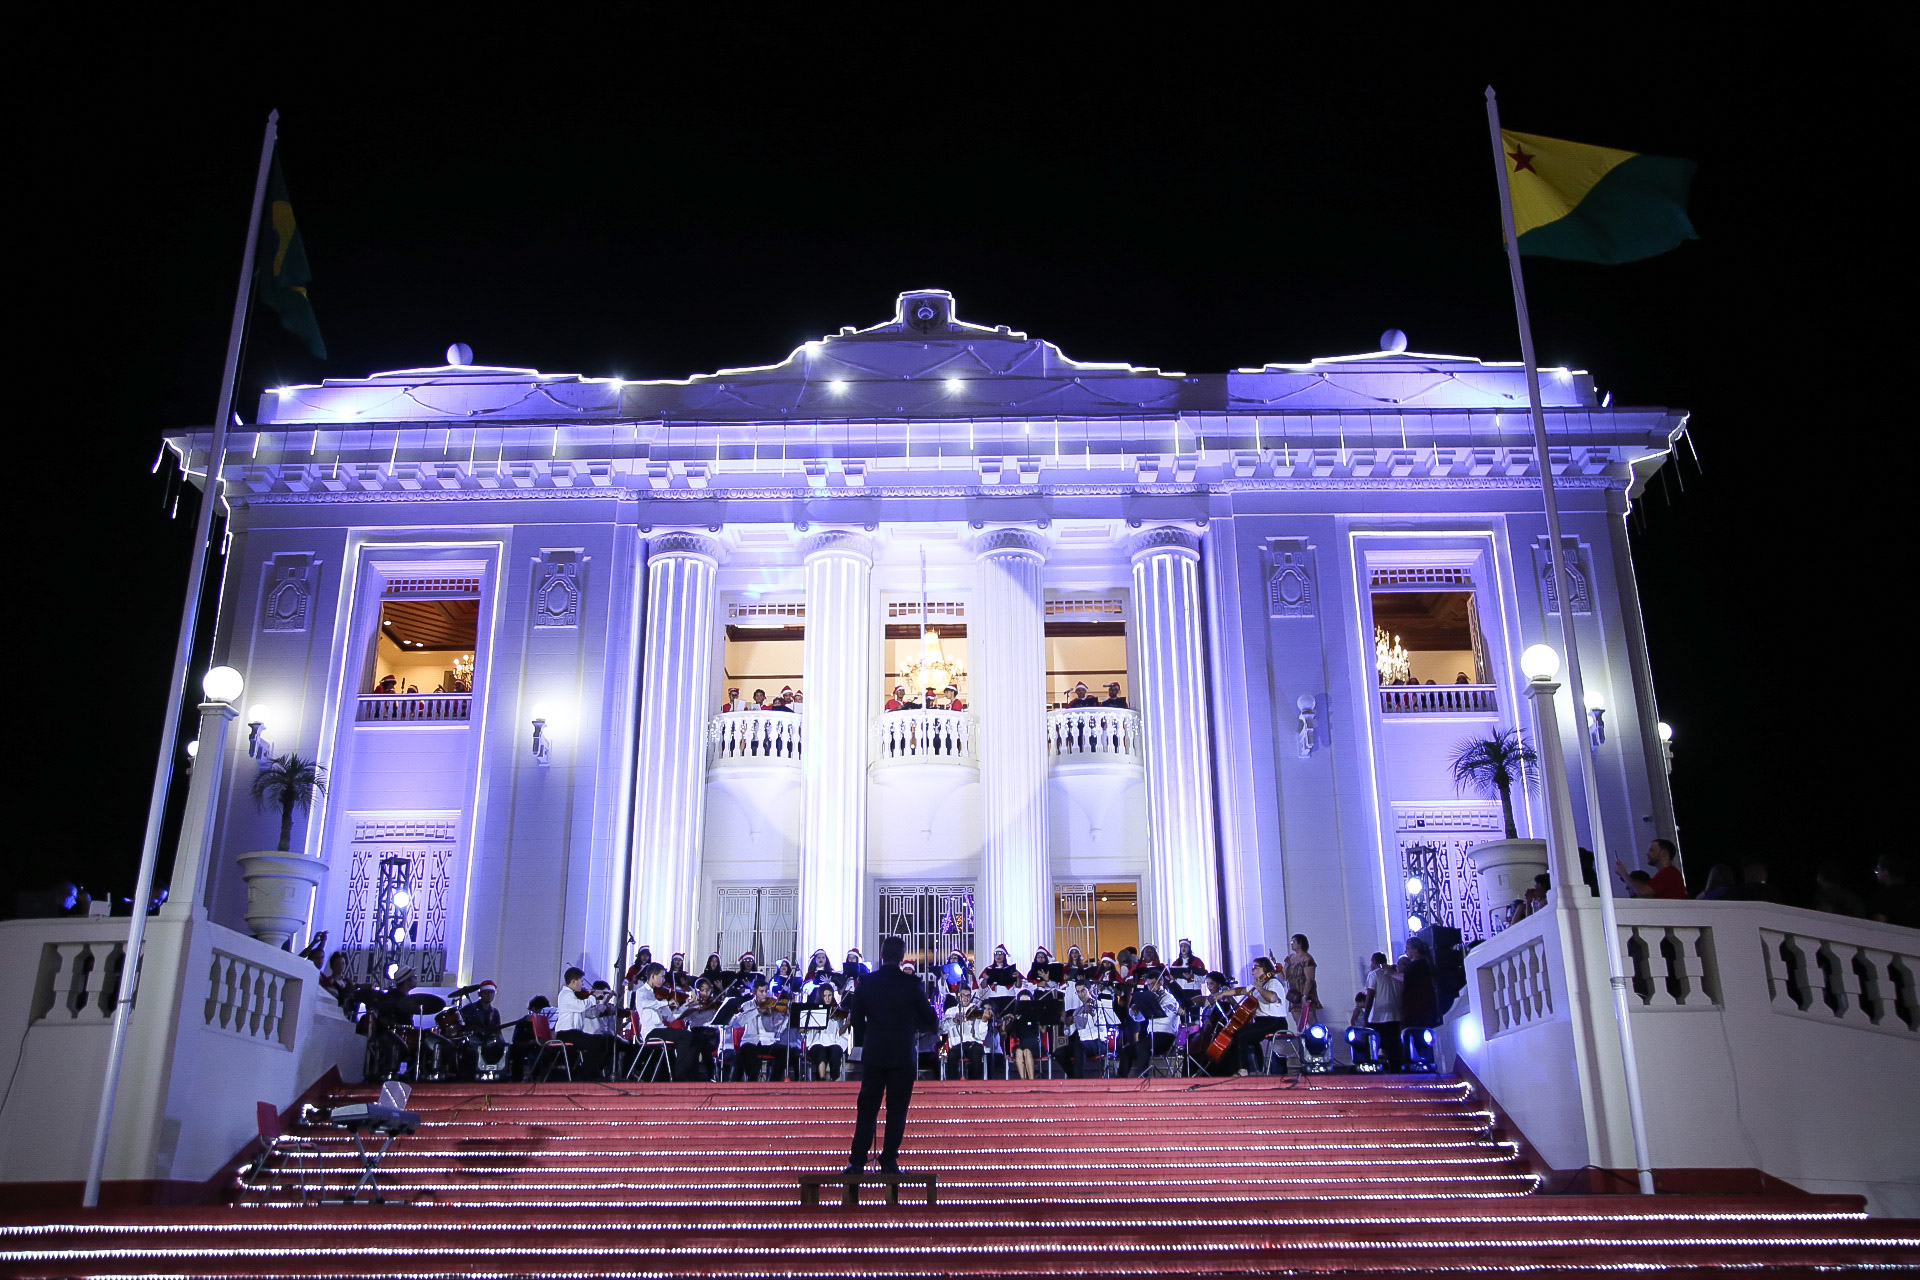 Cantata de Natal emociona dezenas de famílias em frente ao Palácio Rio Branco